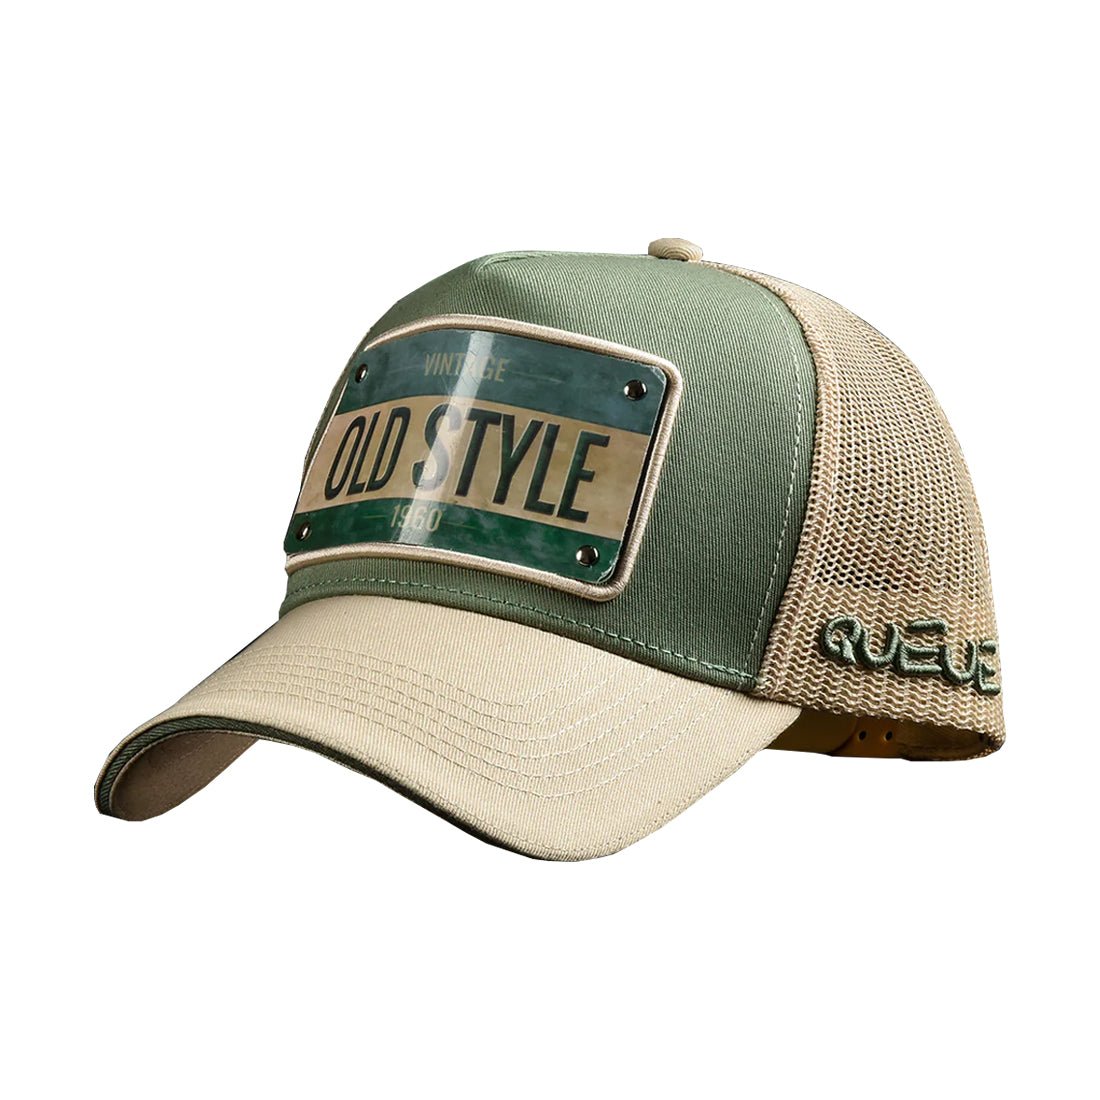 Queue Caps Old Style Cap - Green & Beige - قبعة - Store 974 | ستور ٩٧٤